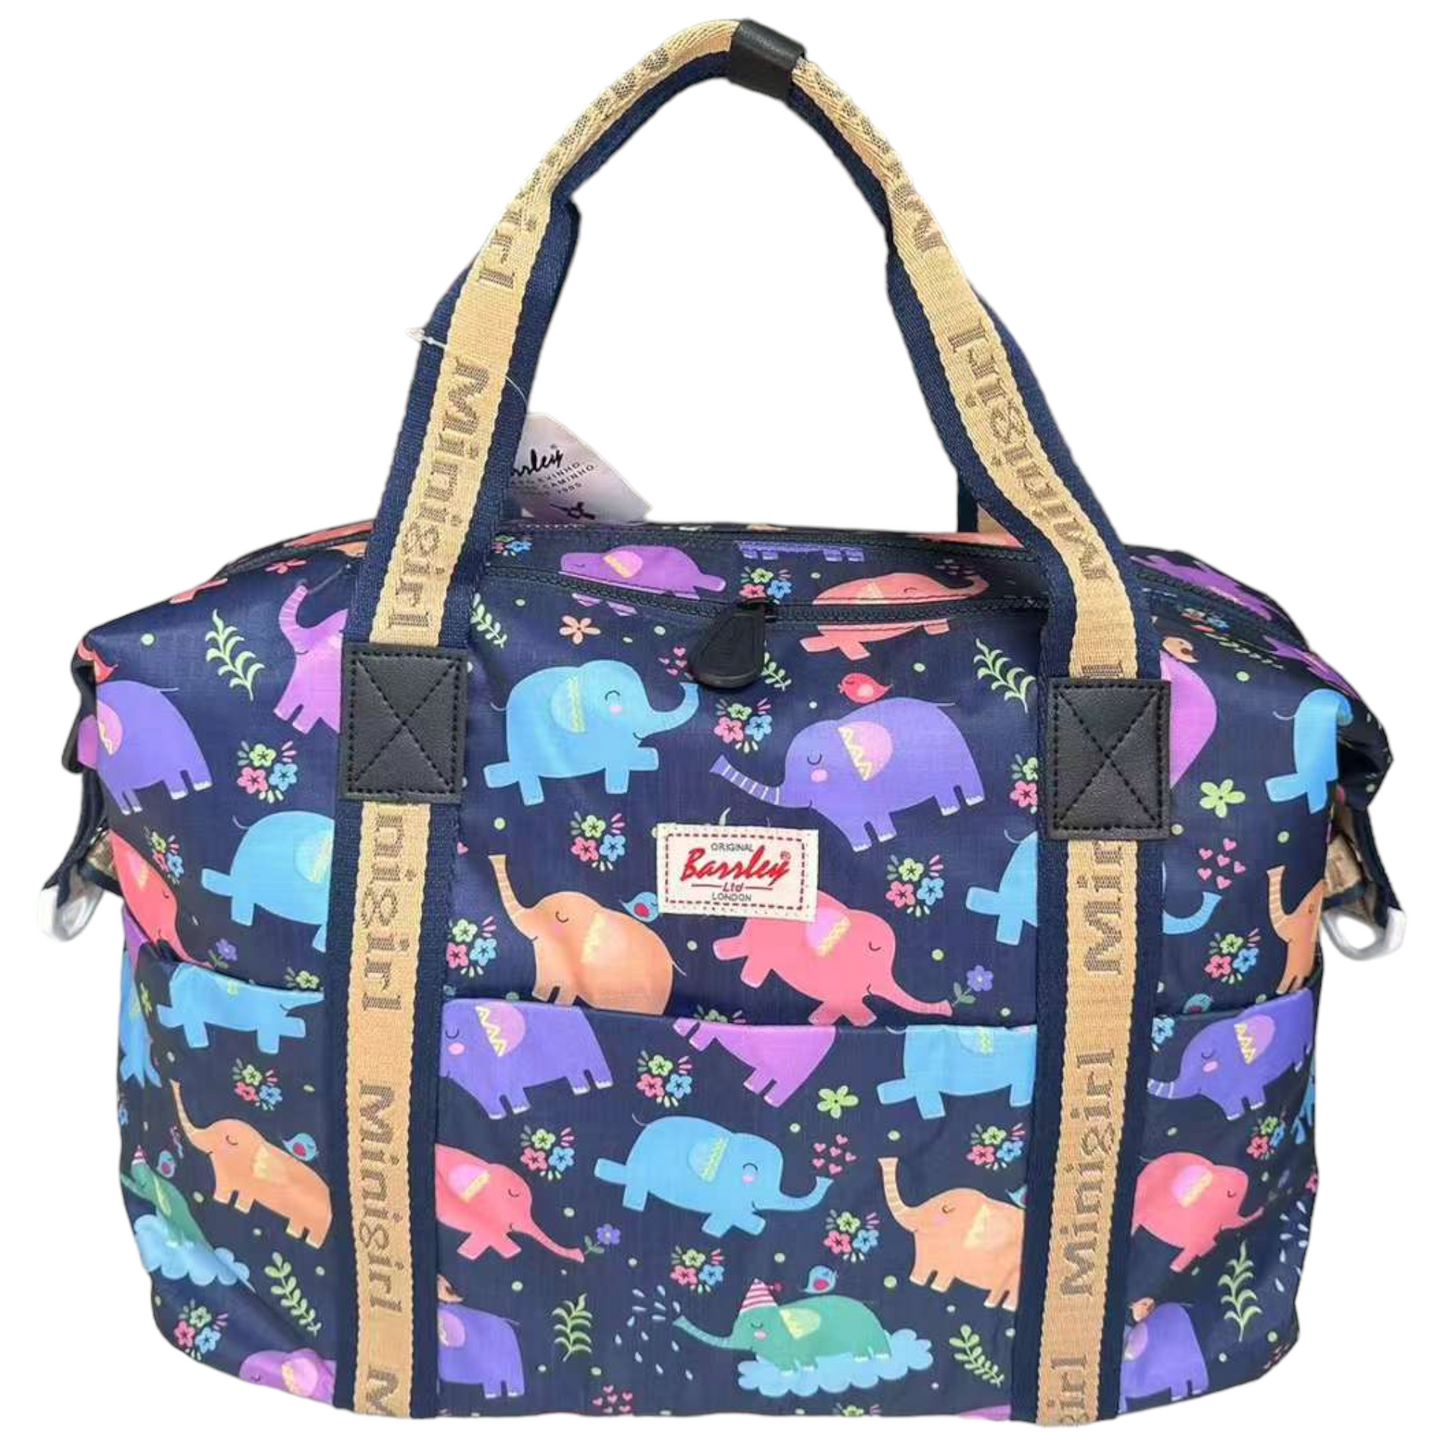 Travel Bag - Floral